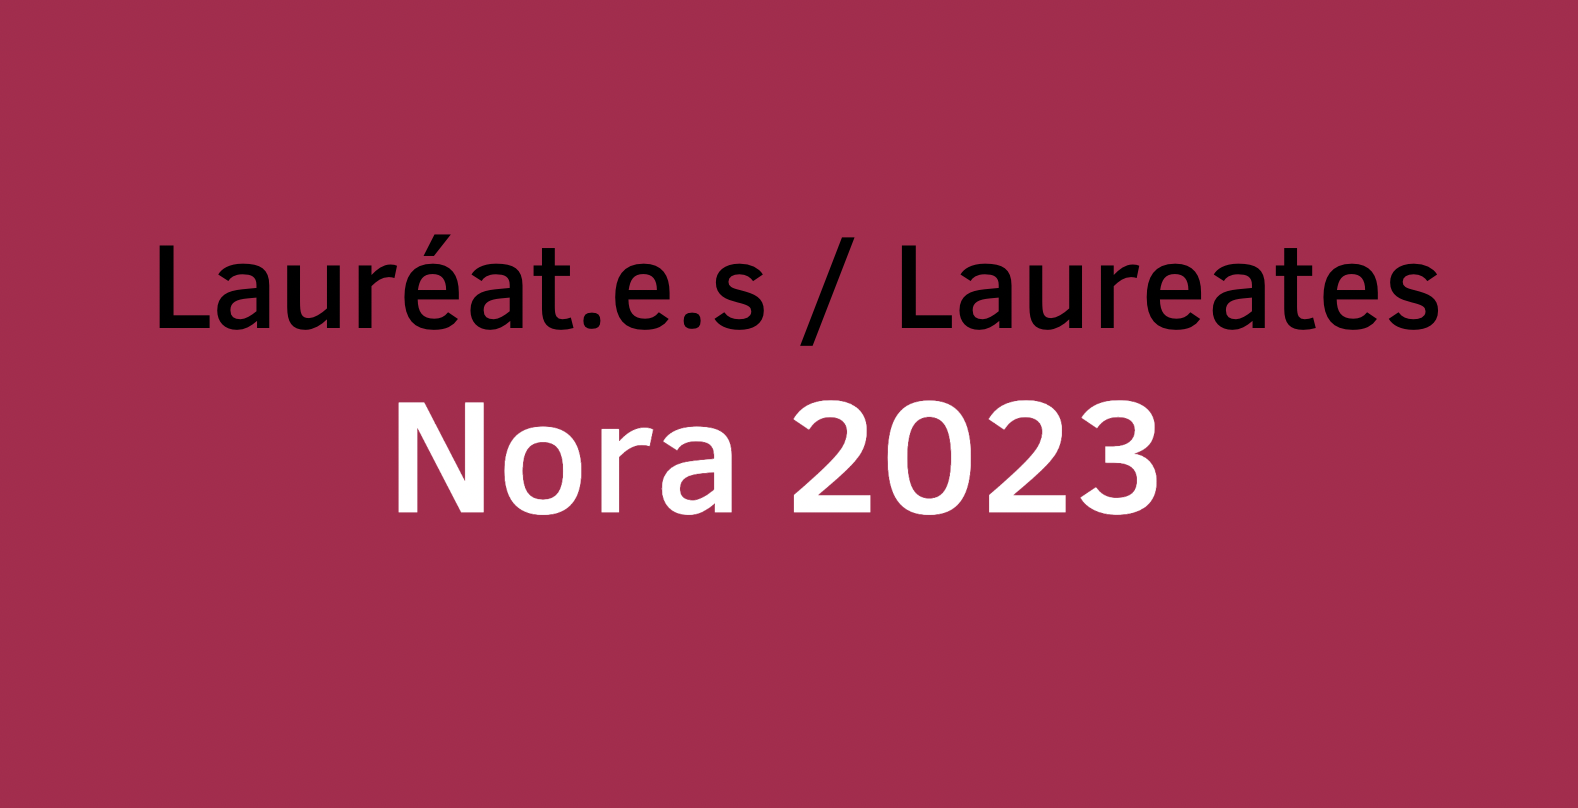 Nora 2023 artist-in-residency laureates